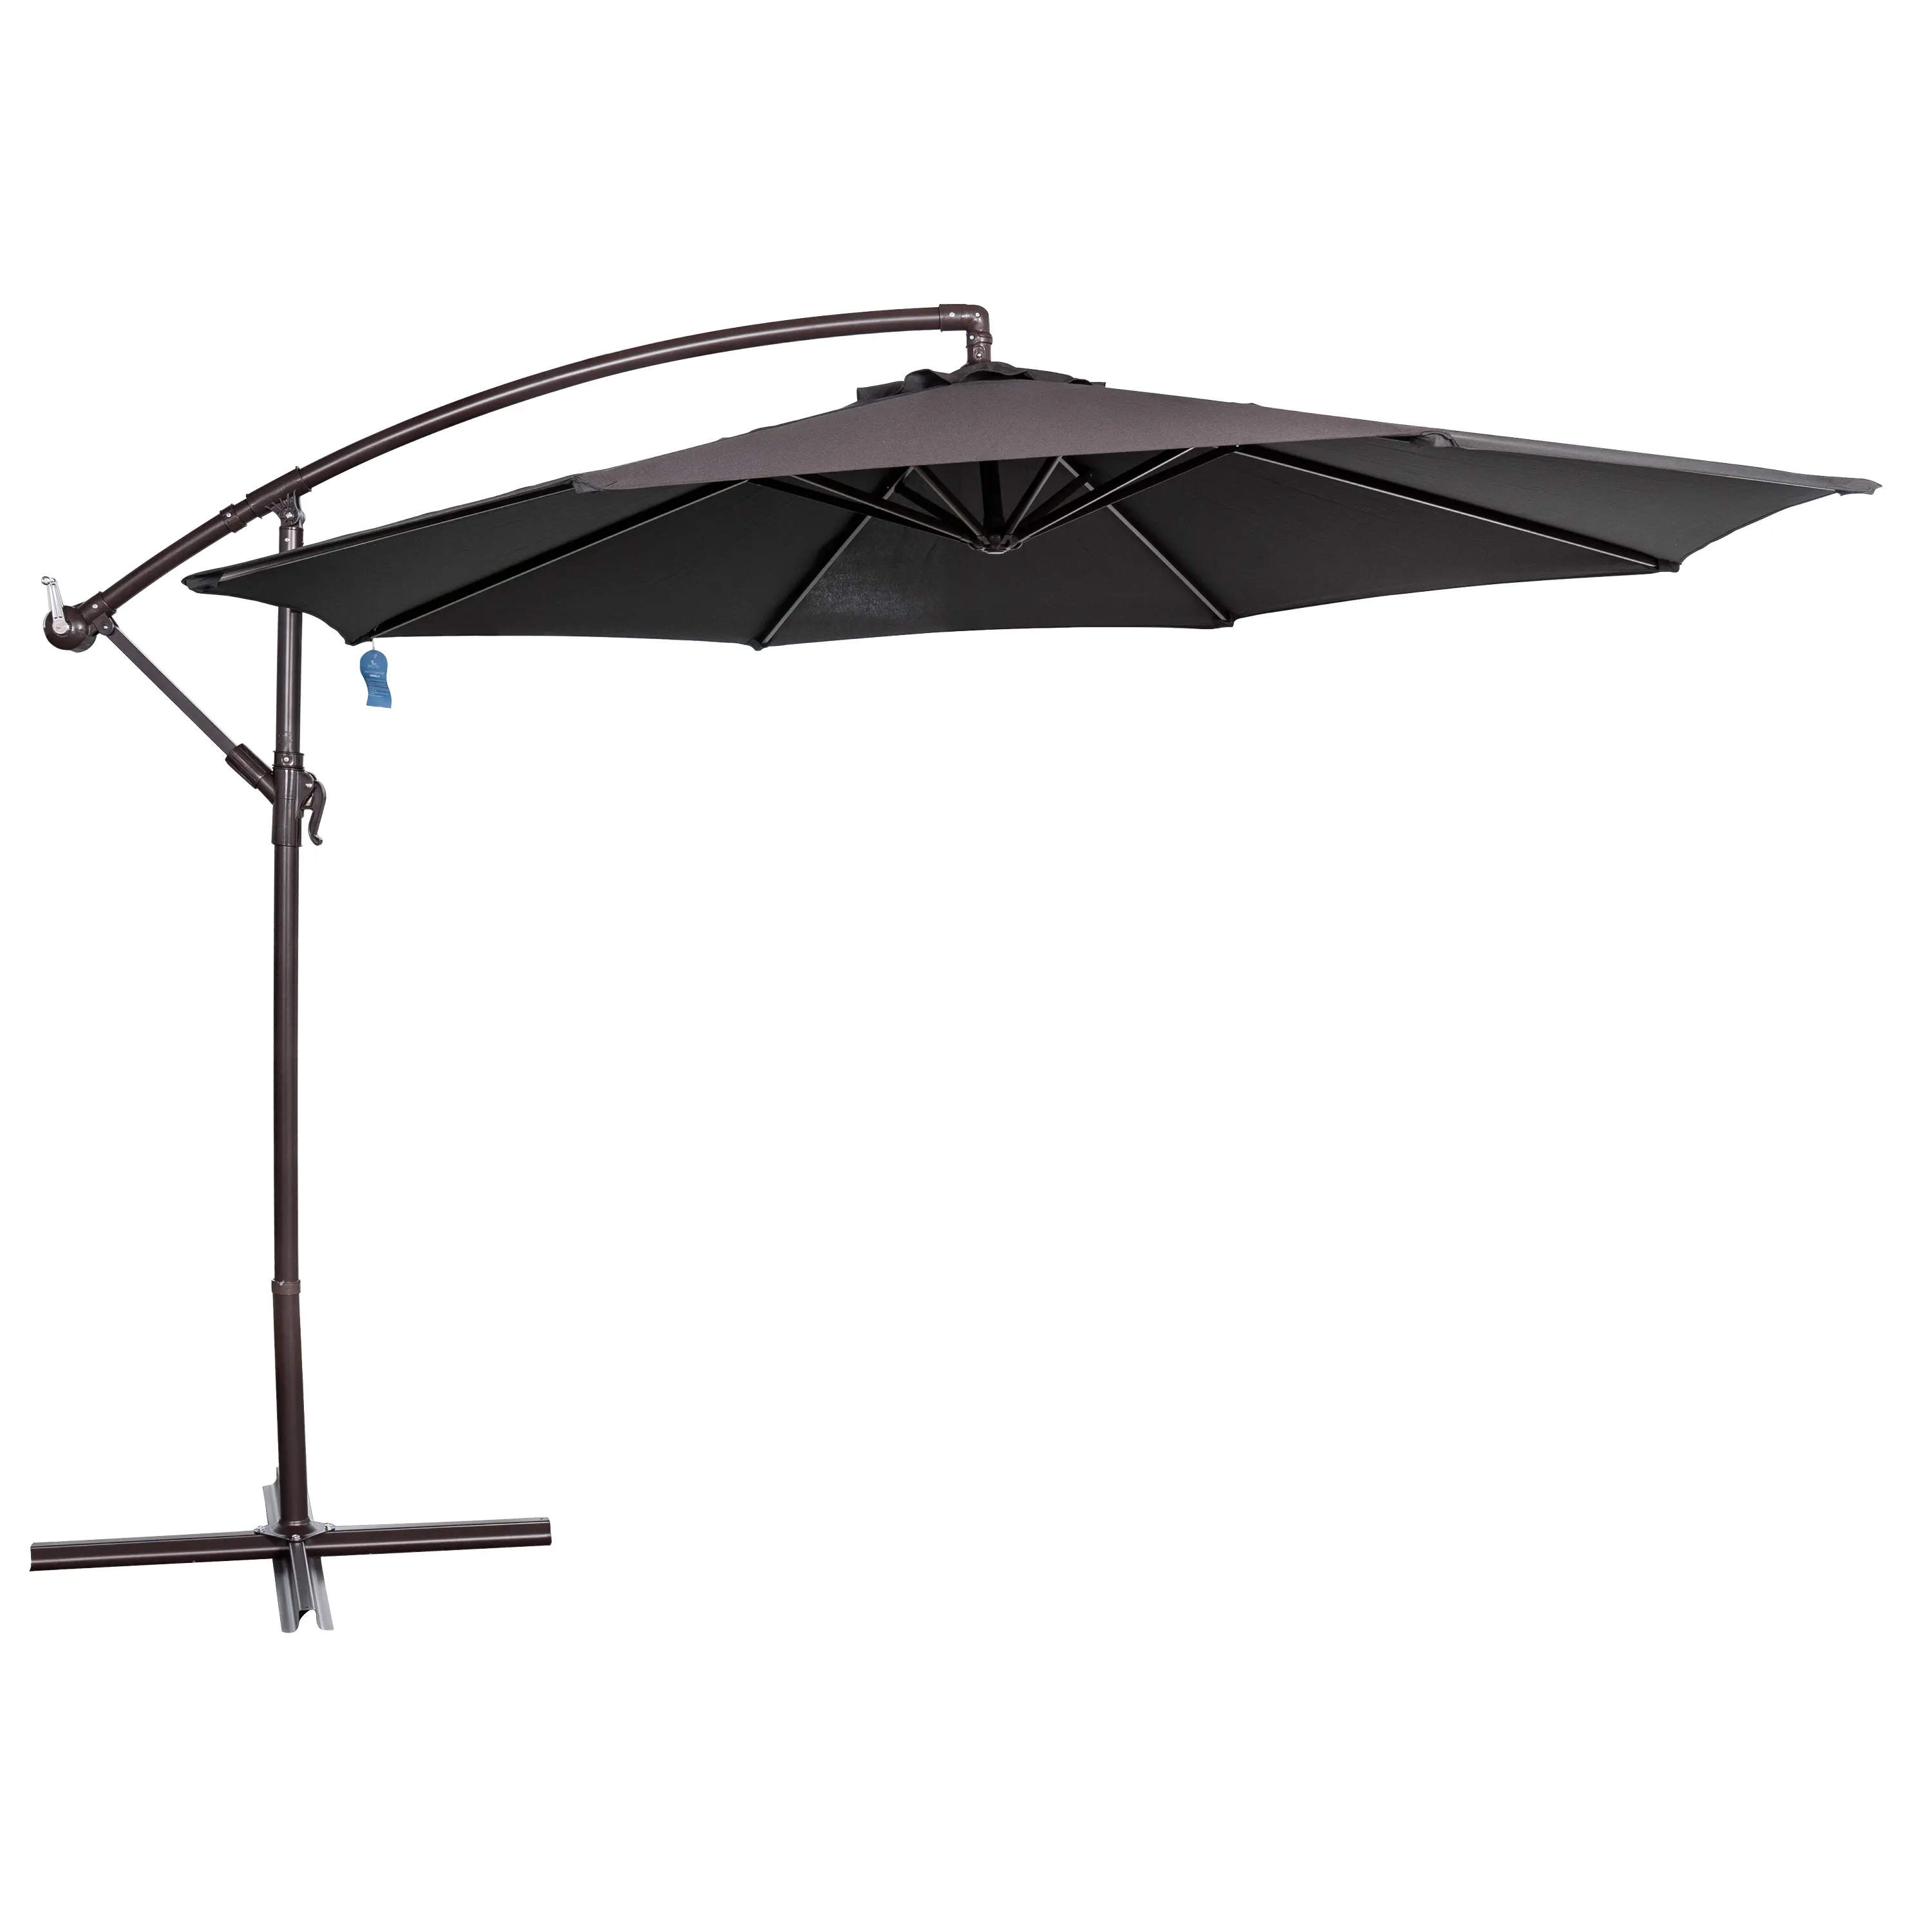 Payung Teras 9 Kaki Hitam dengan Lampu Garis LED Bertenaga Surya dan Sakelar Sentuh